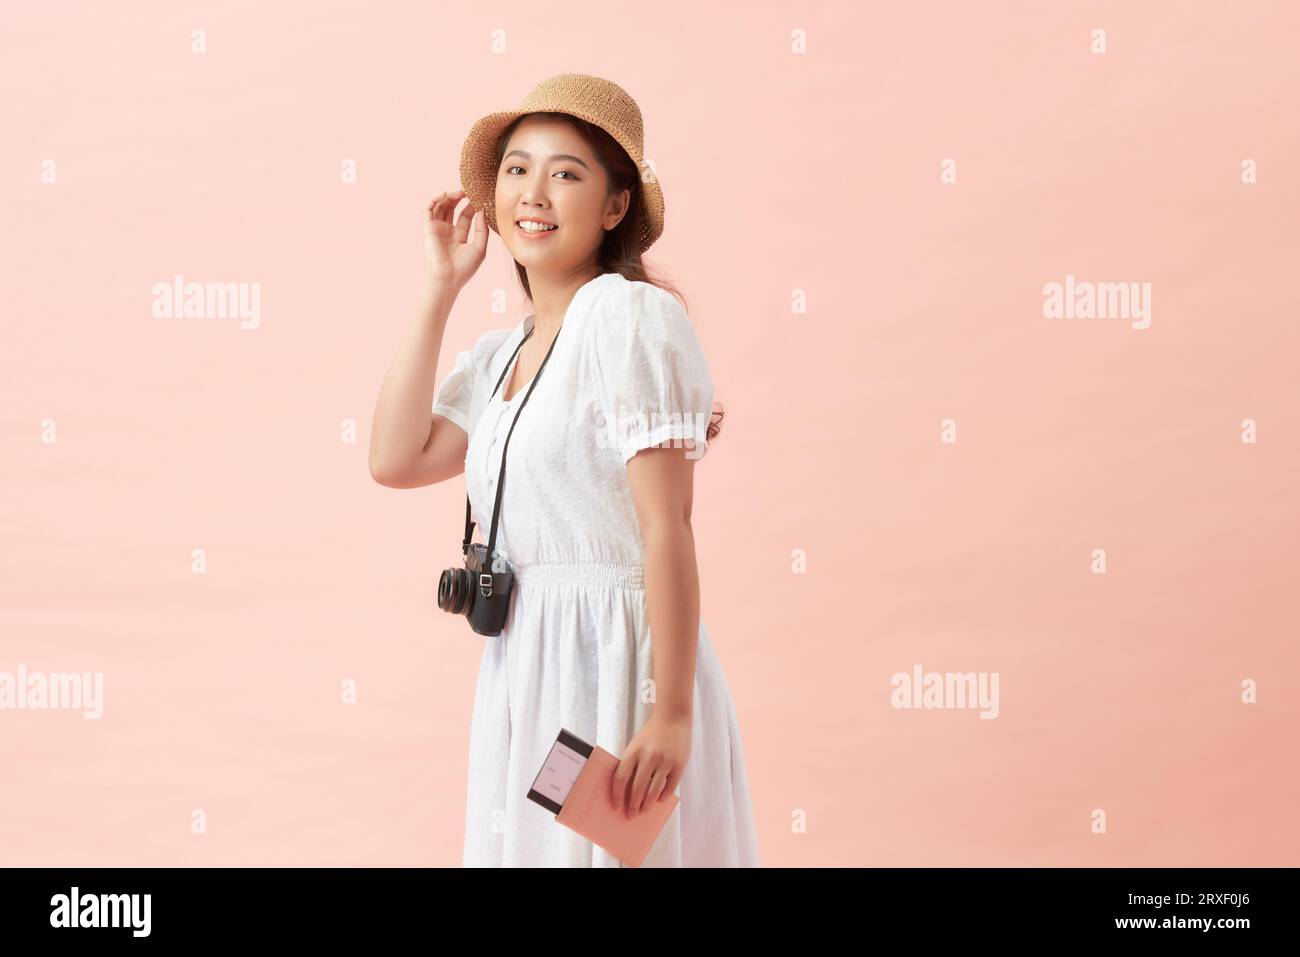 Una donna turistica felice che indossa un cappello con i biglietti per la fotocamera sembra isolata su sfondo rosa Foto Stock